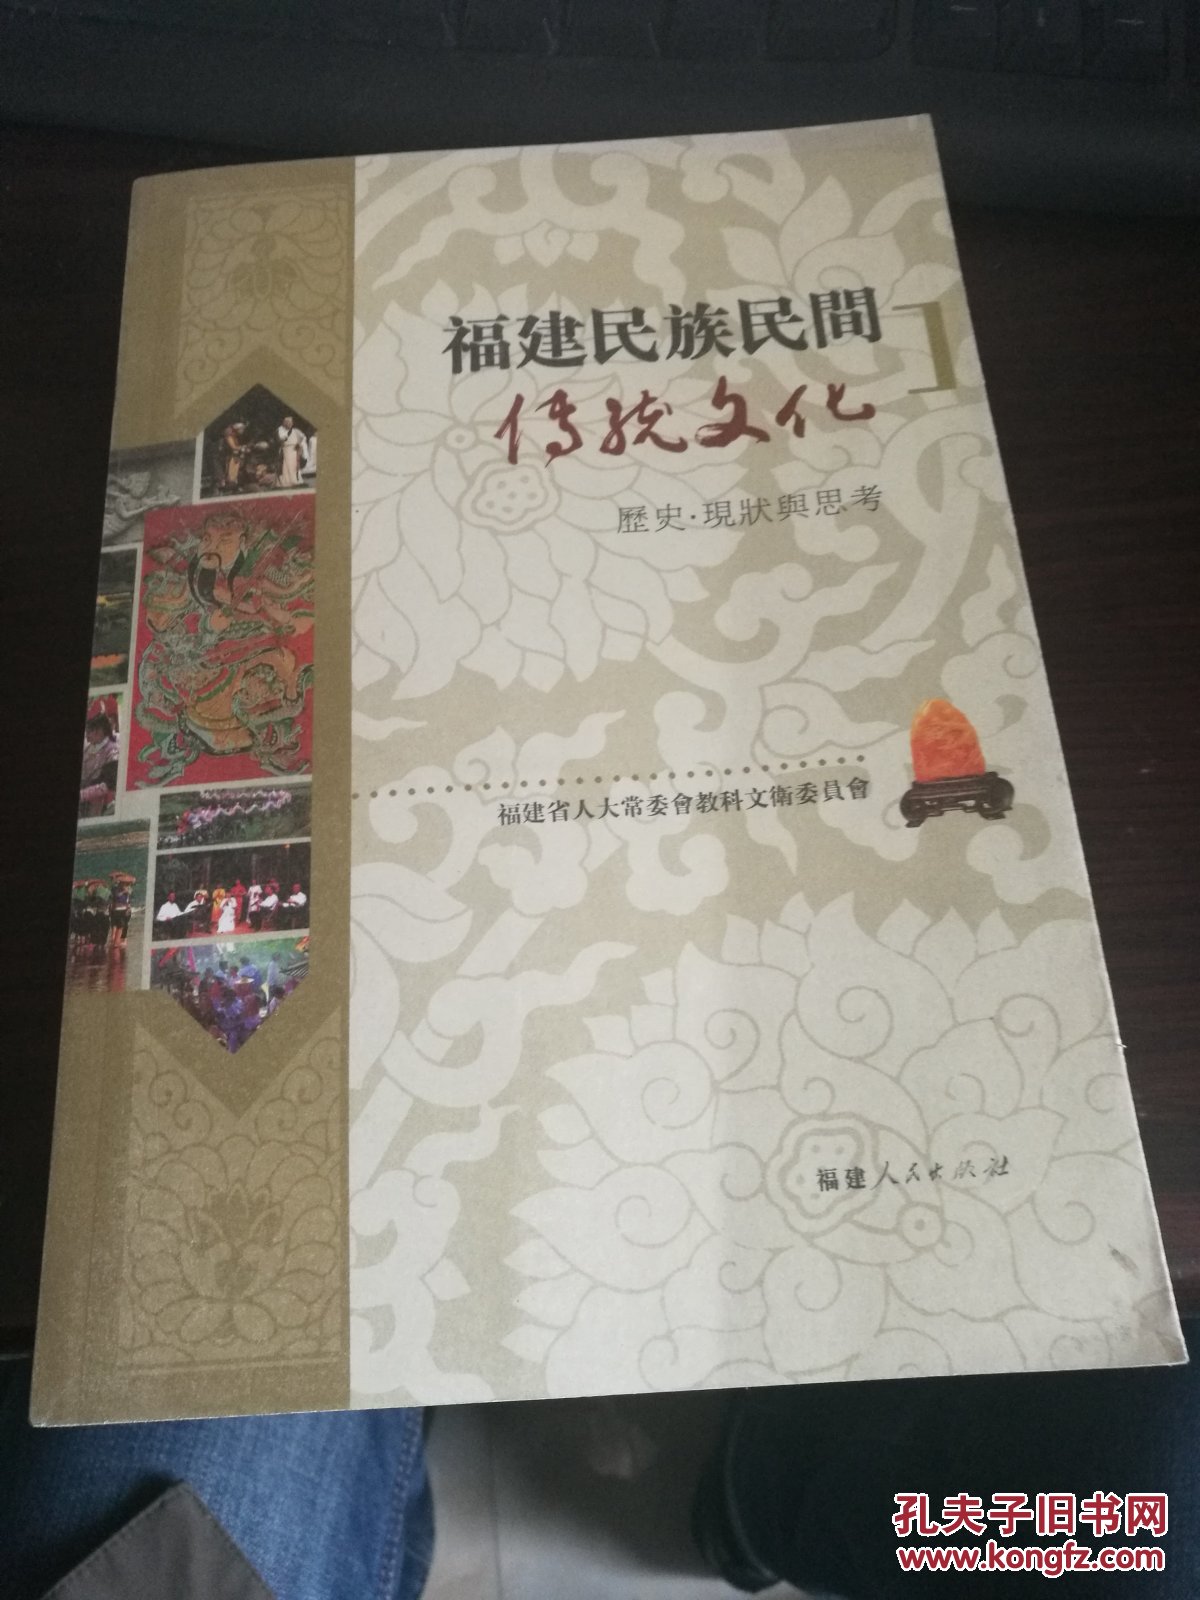 福建民族民间传统文化:历史·现状与思考